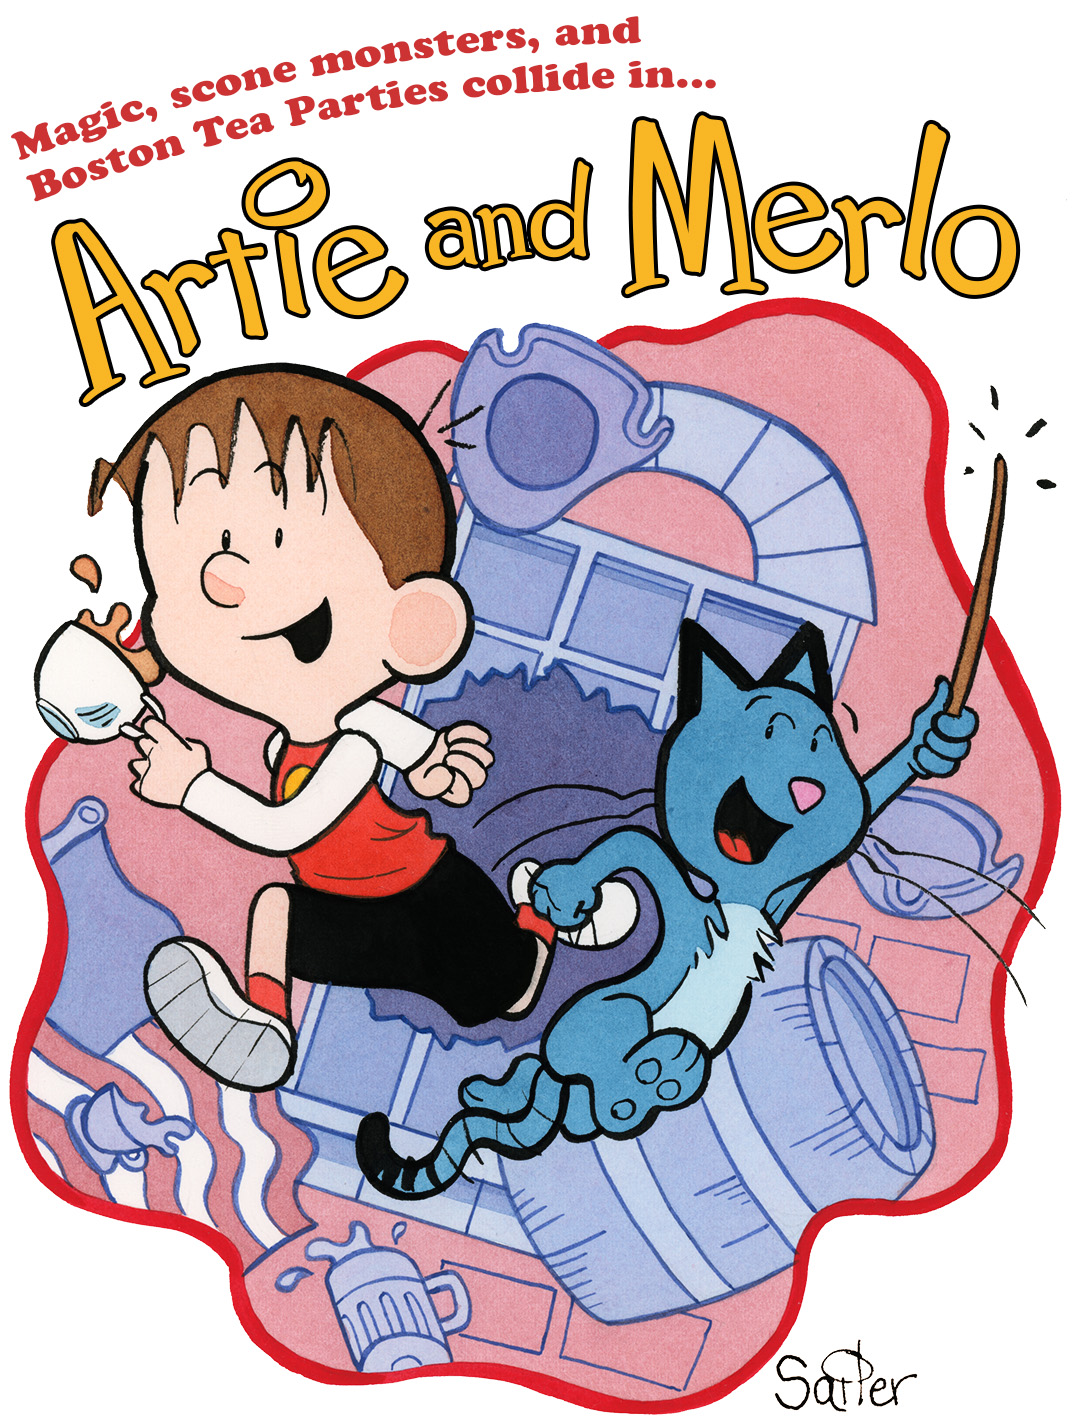 Artie and Merlo